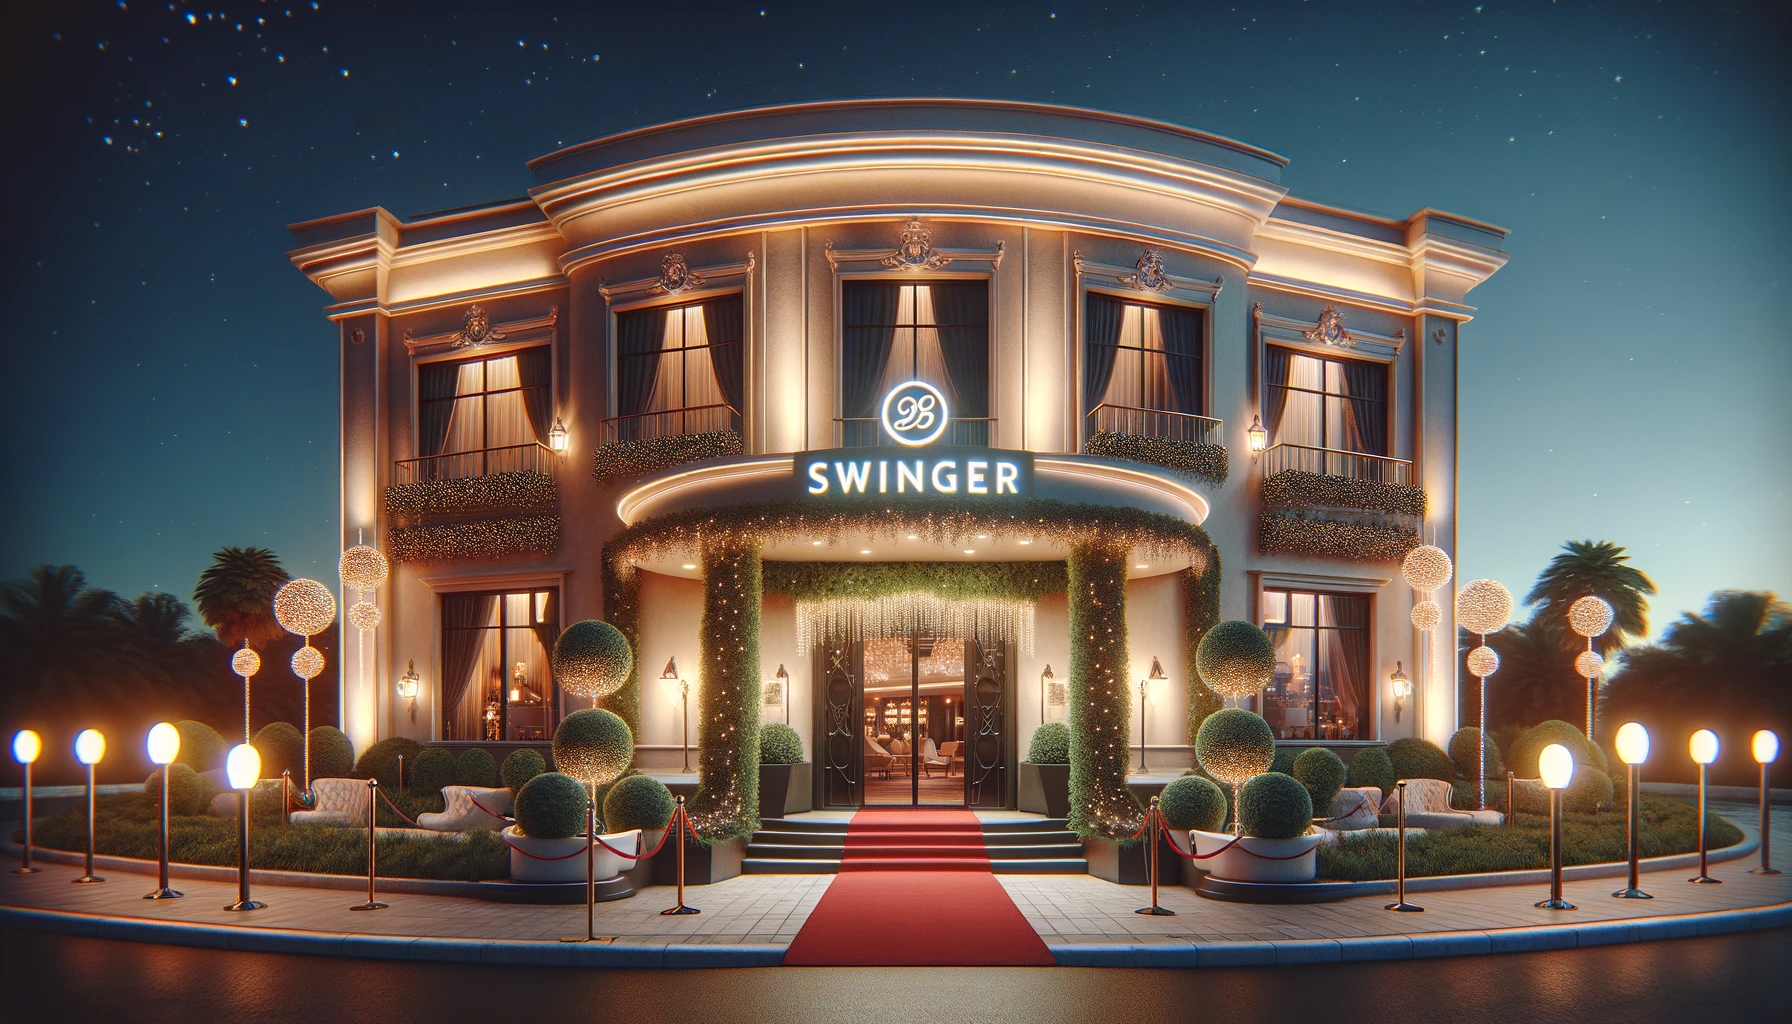 Swinger Hotel Take over